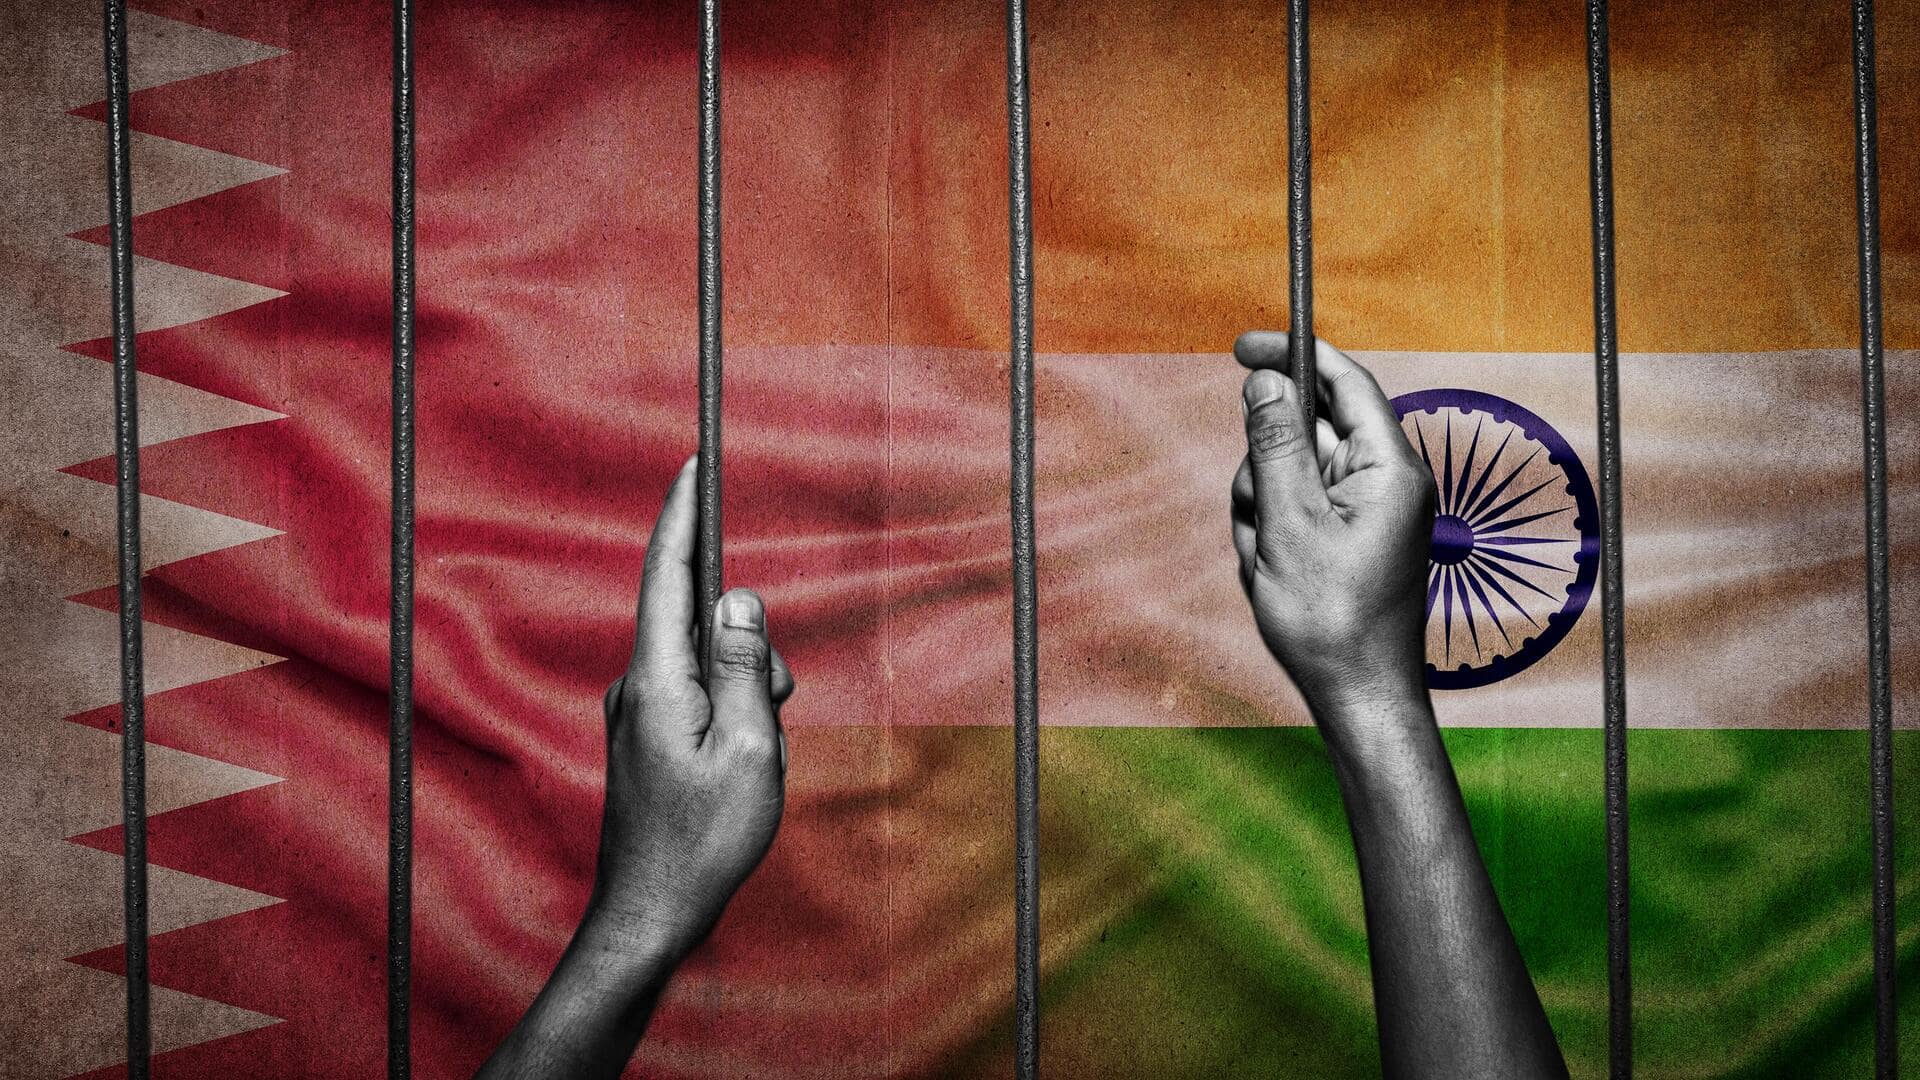 भारत की बड़ी कूटनीतिक जीत, कतर की जेल में बंद 8 पूर्व नौसैनिक रिहा, स्वदेश लौटे